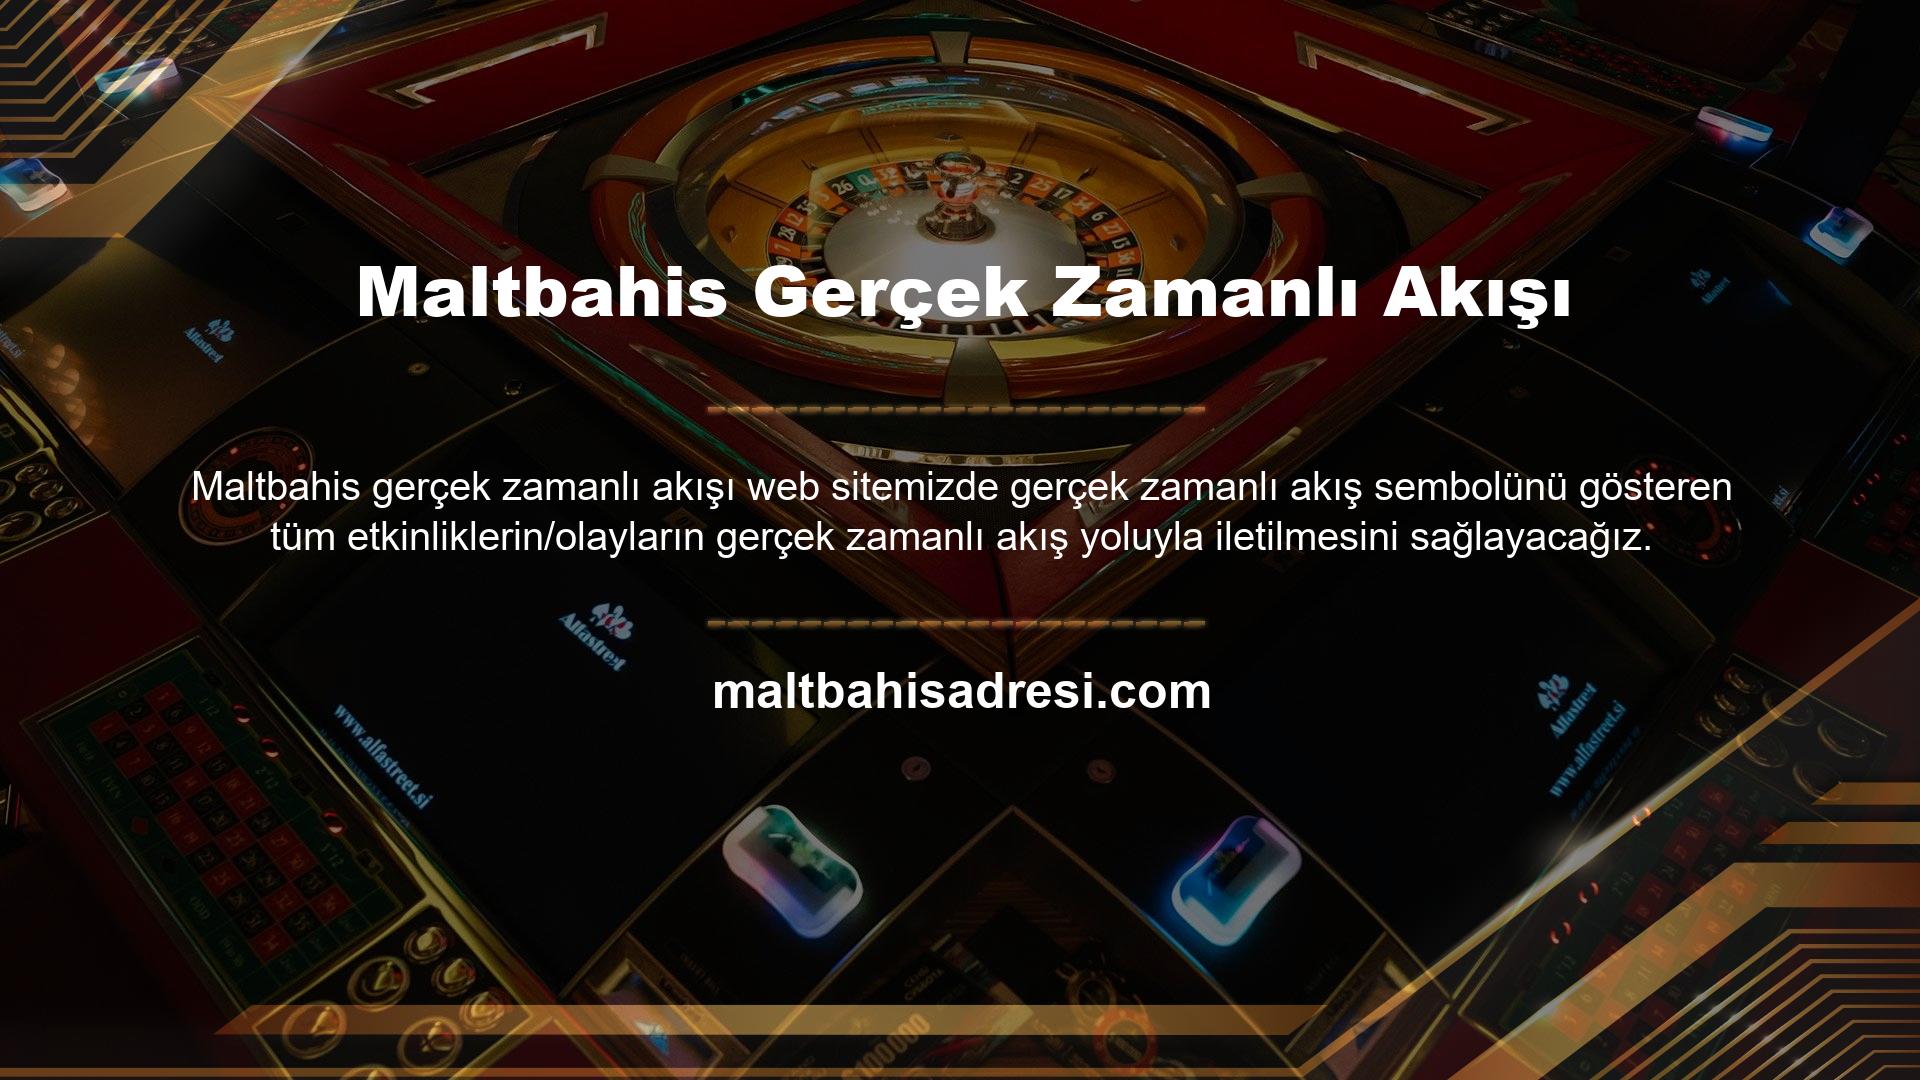 Canlı bahisler, çim oyunları ve pokerin tümü Maltbahis web sitesinde mevcuttur